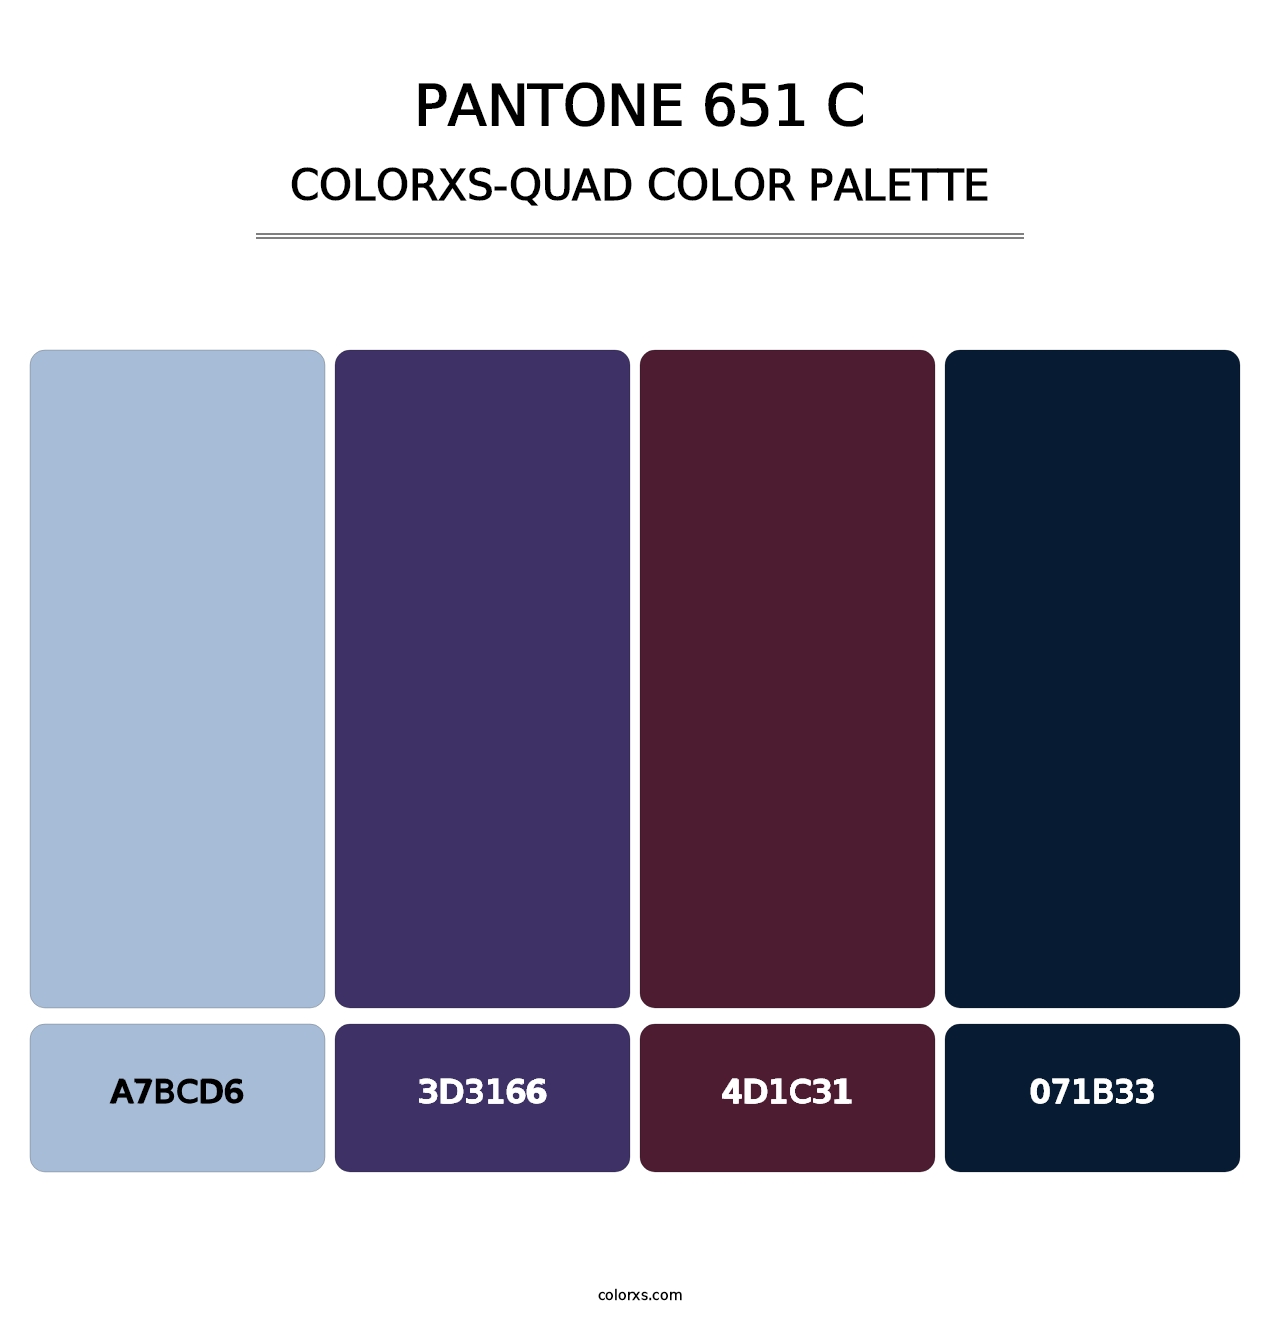 PANTONE 651 C - Colorxs Quad Palette